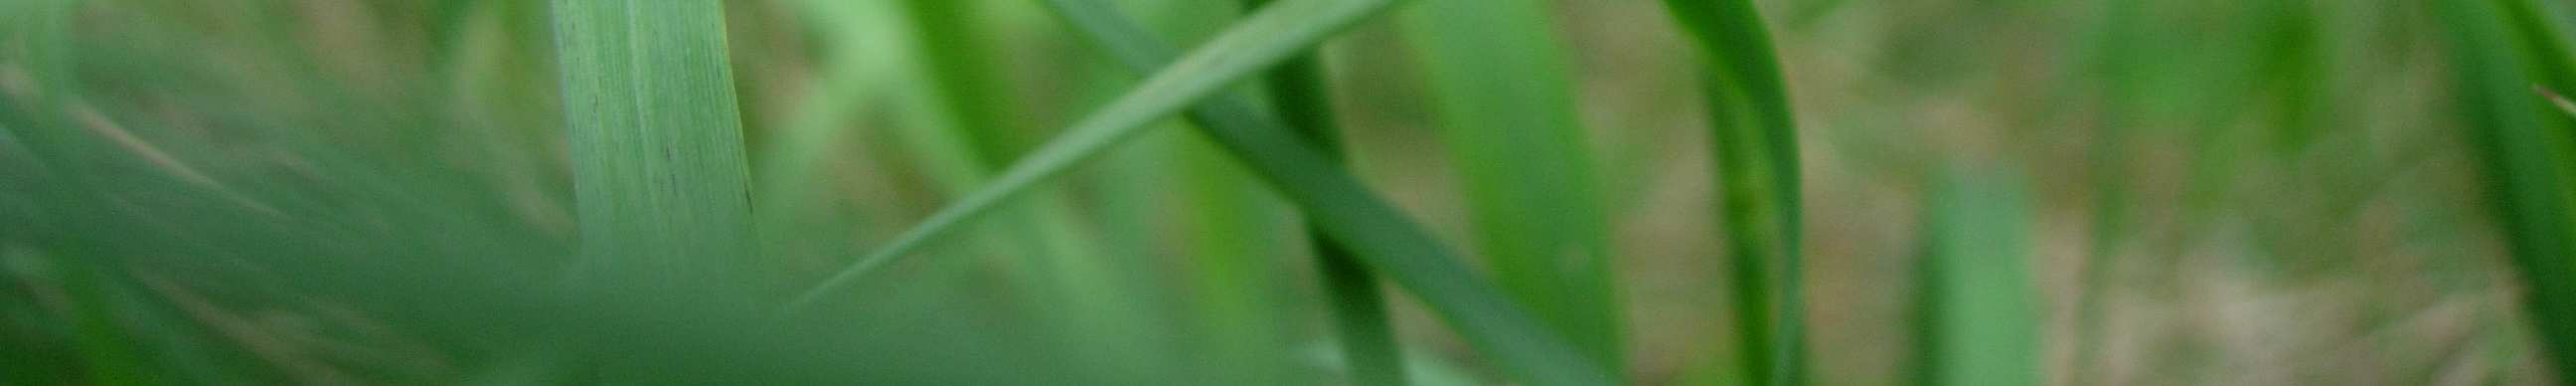 Kuva 2. Ketokultasiipi (Lycaena hippotohoe) on jokseenkin yleinen niittyjen päiväperhonen, joka on todennäköisesti taantunut viime vuosikymmenten aikana maatalouden tehostumisen seurauksena.